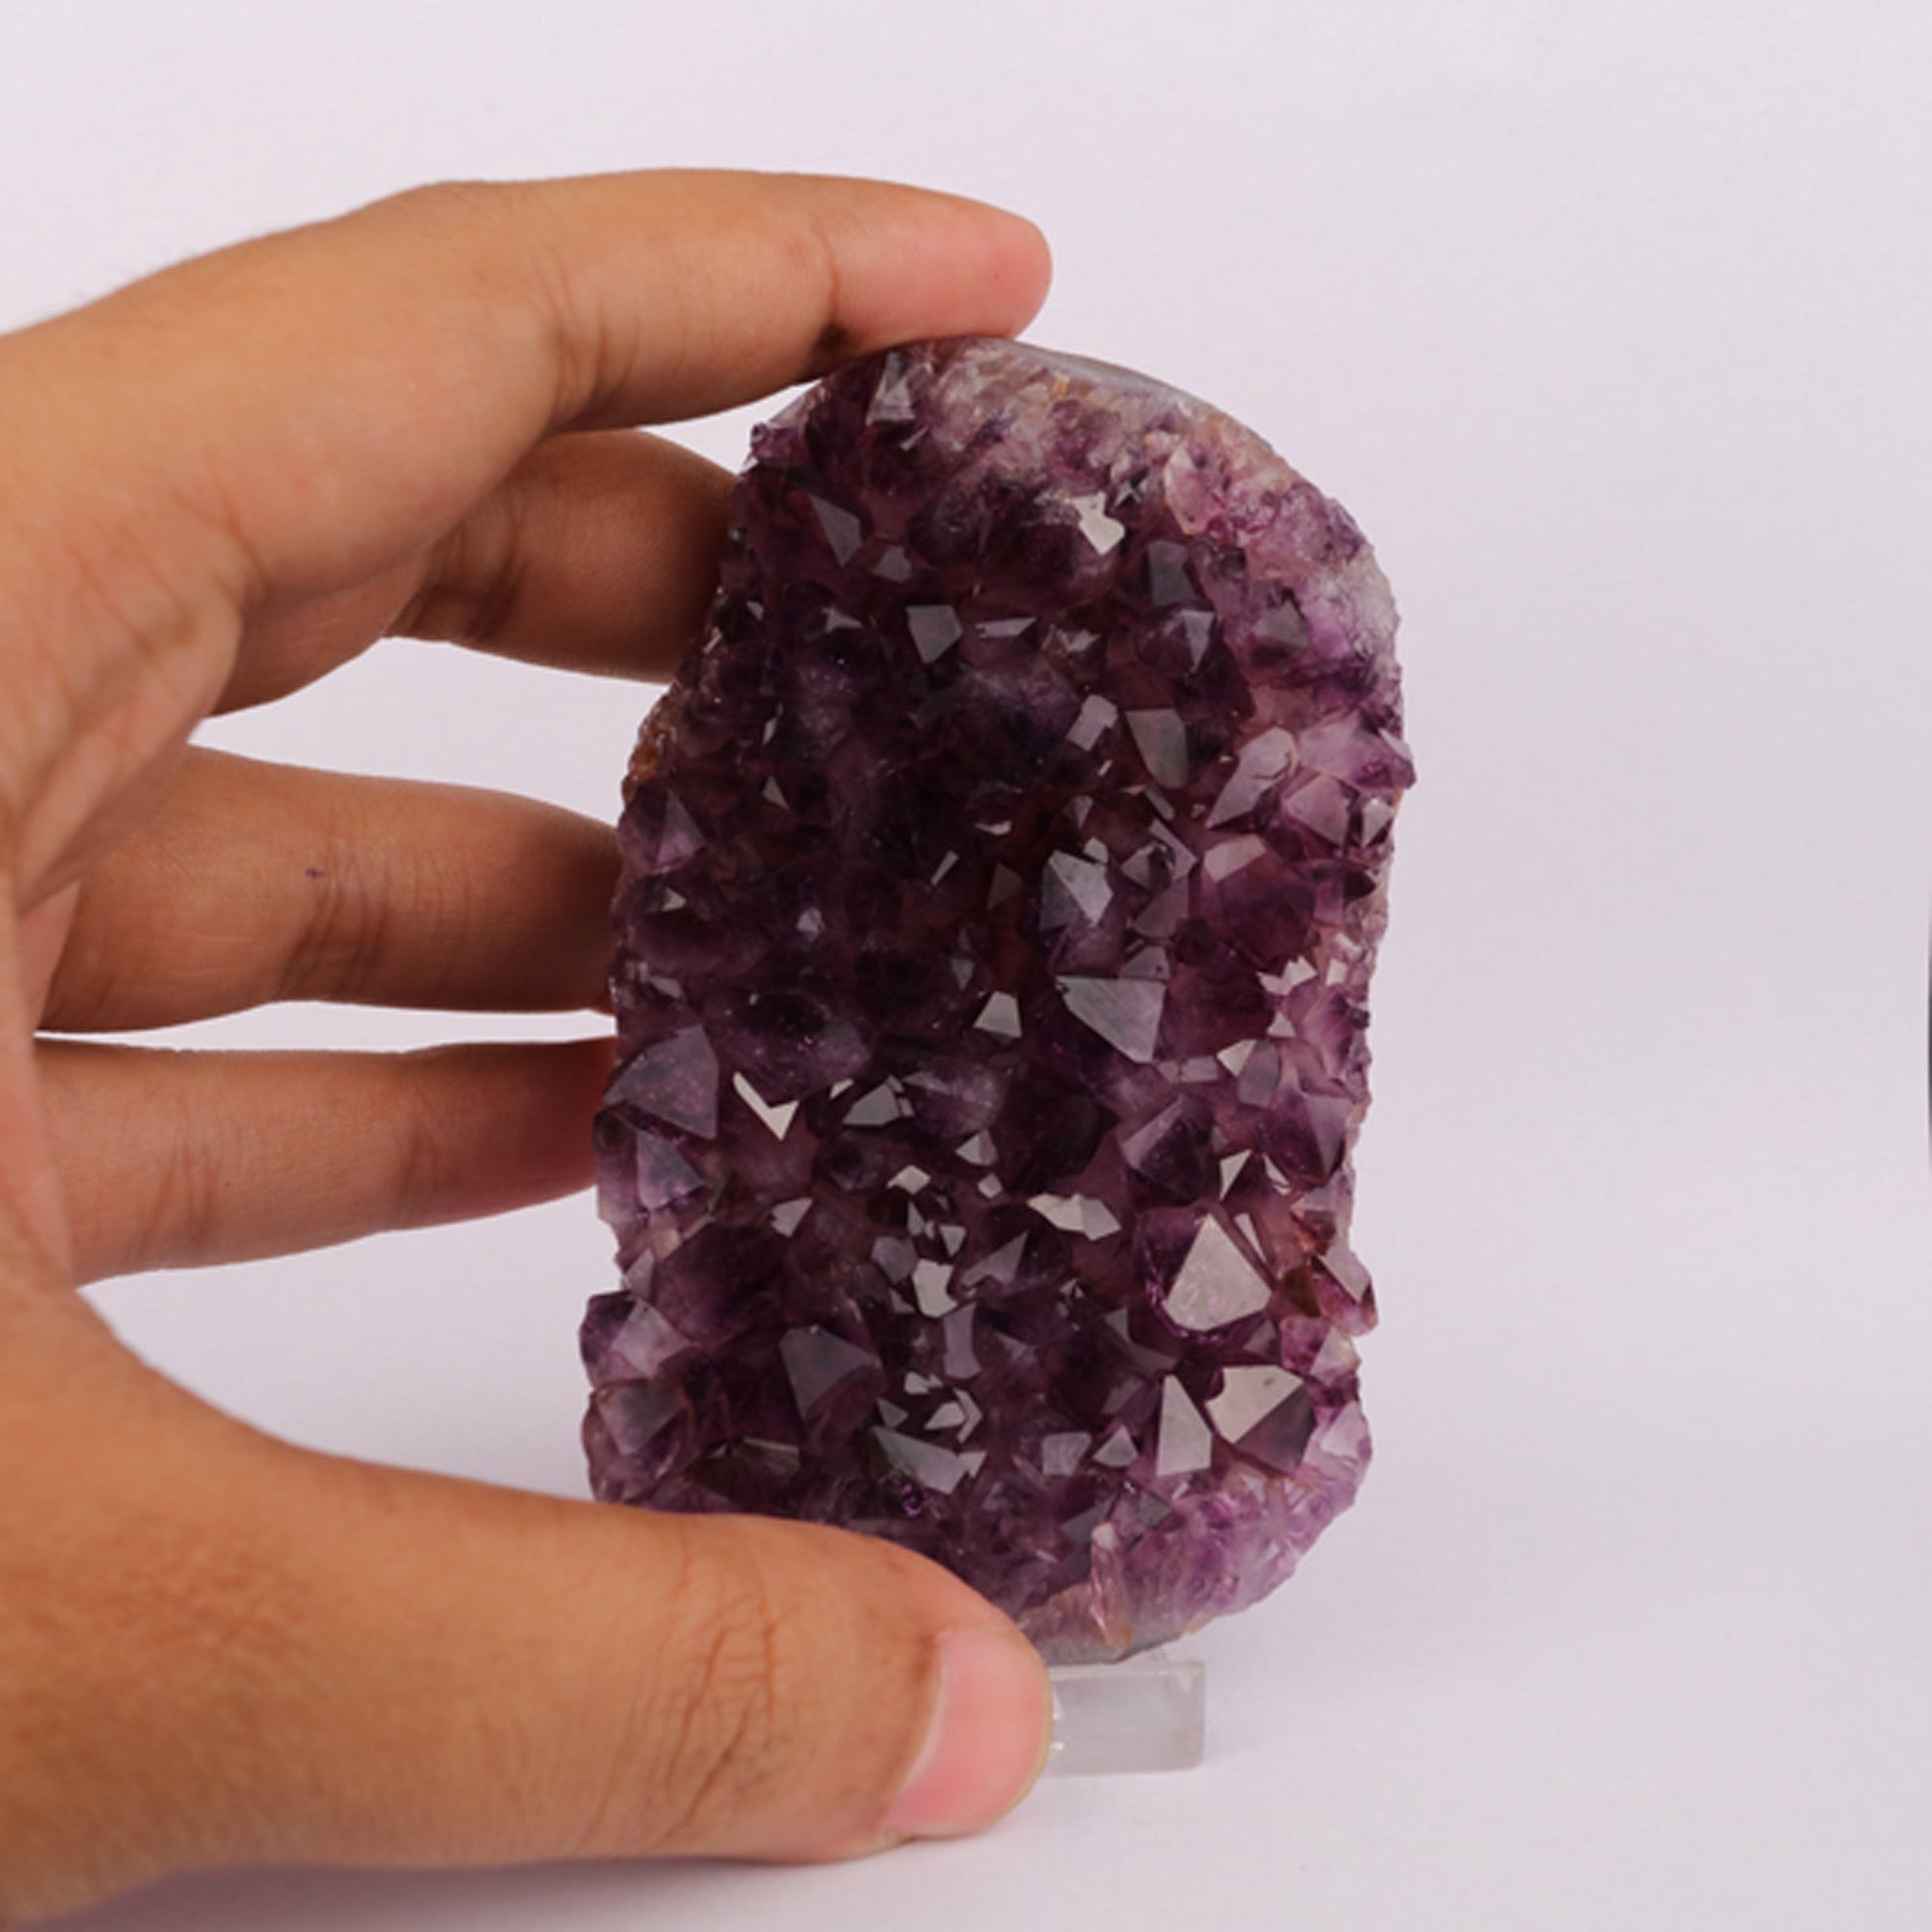 Amethyst Sprakling Crystals Natural Mineral Specimen # B 6225 Amethyst Superb Minerals 